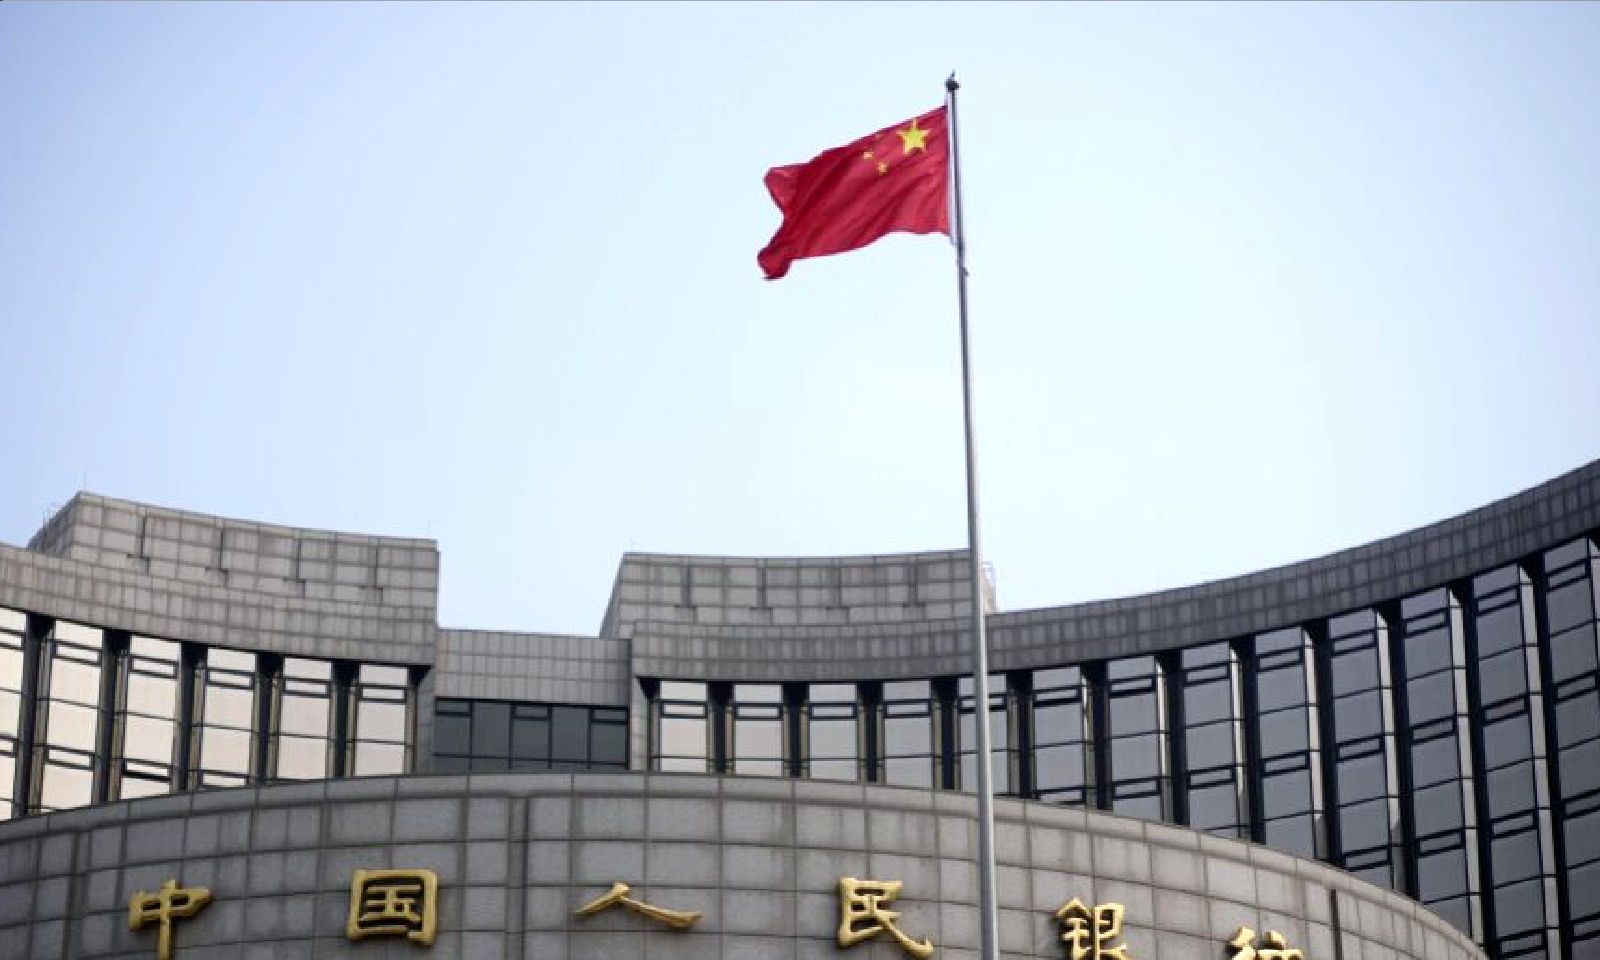 برنامه جدید بانک مرکزی چین برای مقابله با رکود بخش مسکن